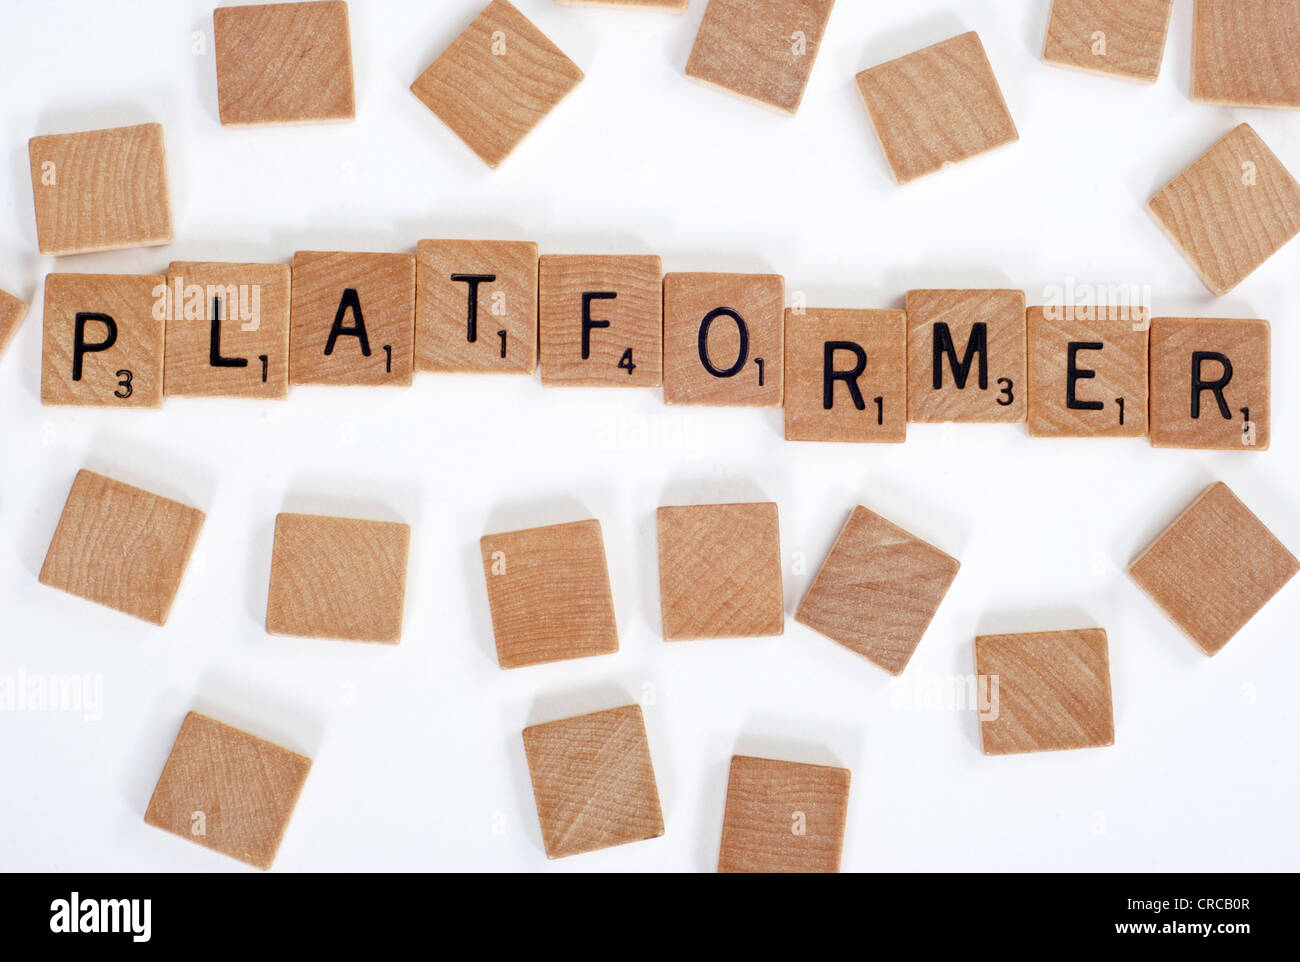 Holz-Scrabble Fliesen buchstabieren der Wörter "Platformer". Auf weiß Stockfoto